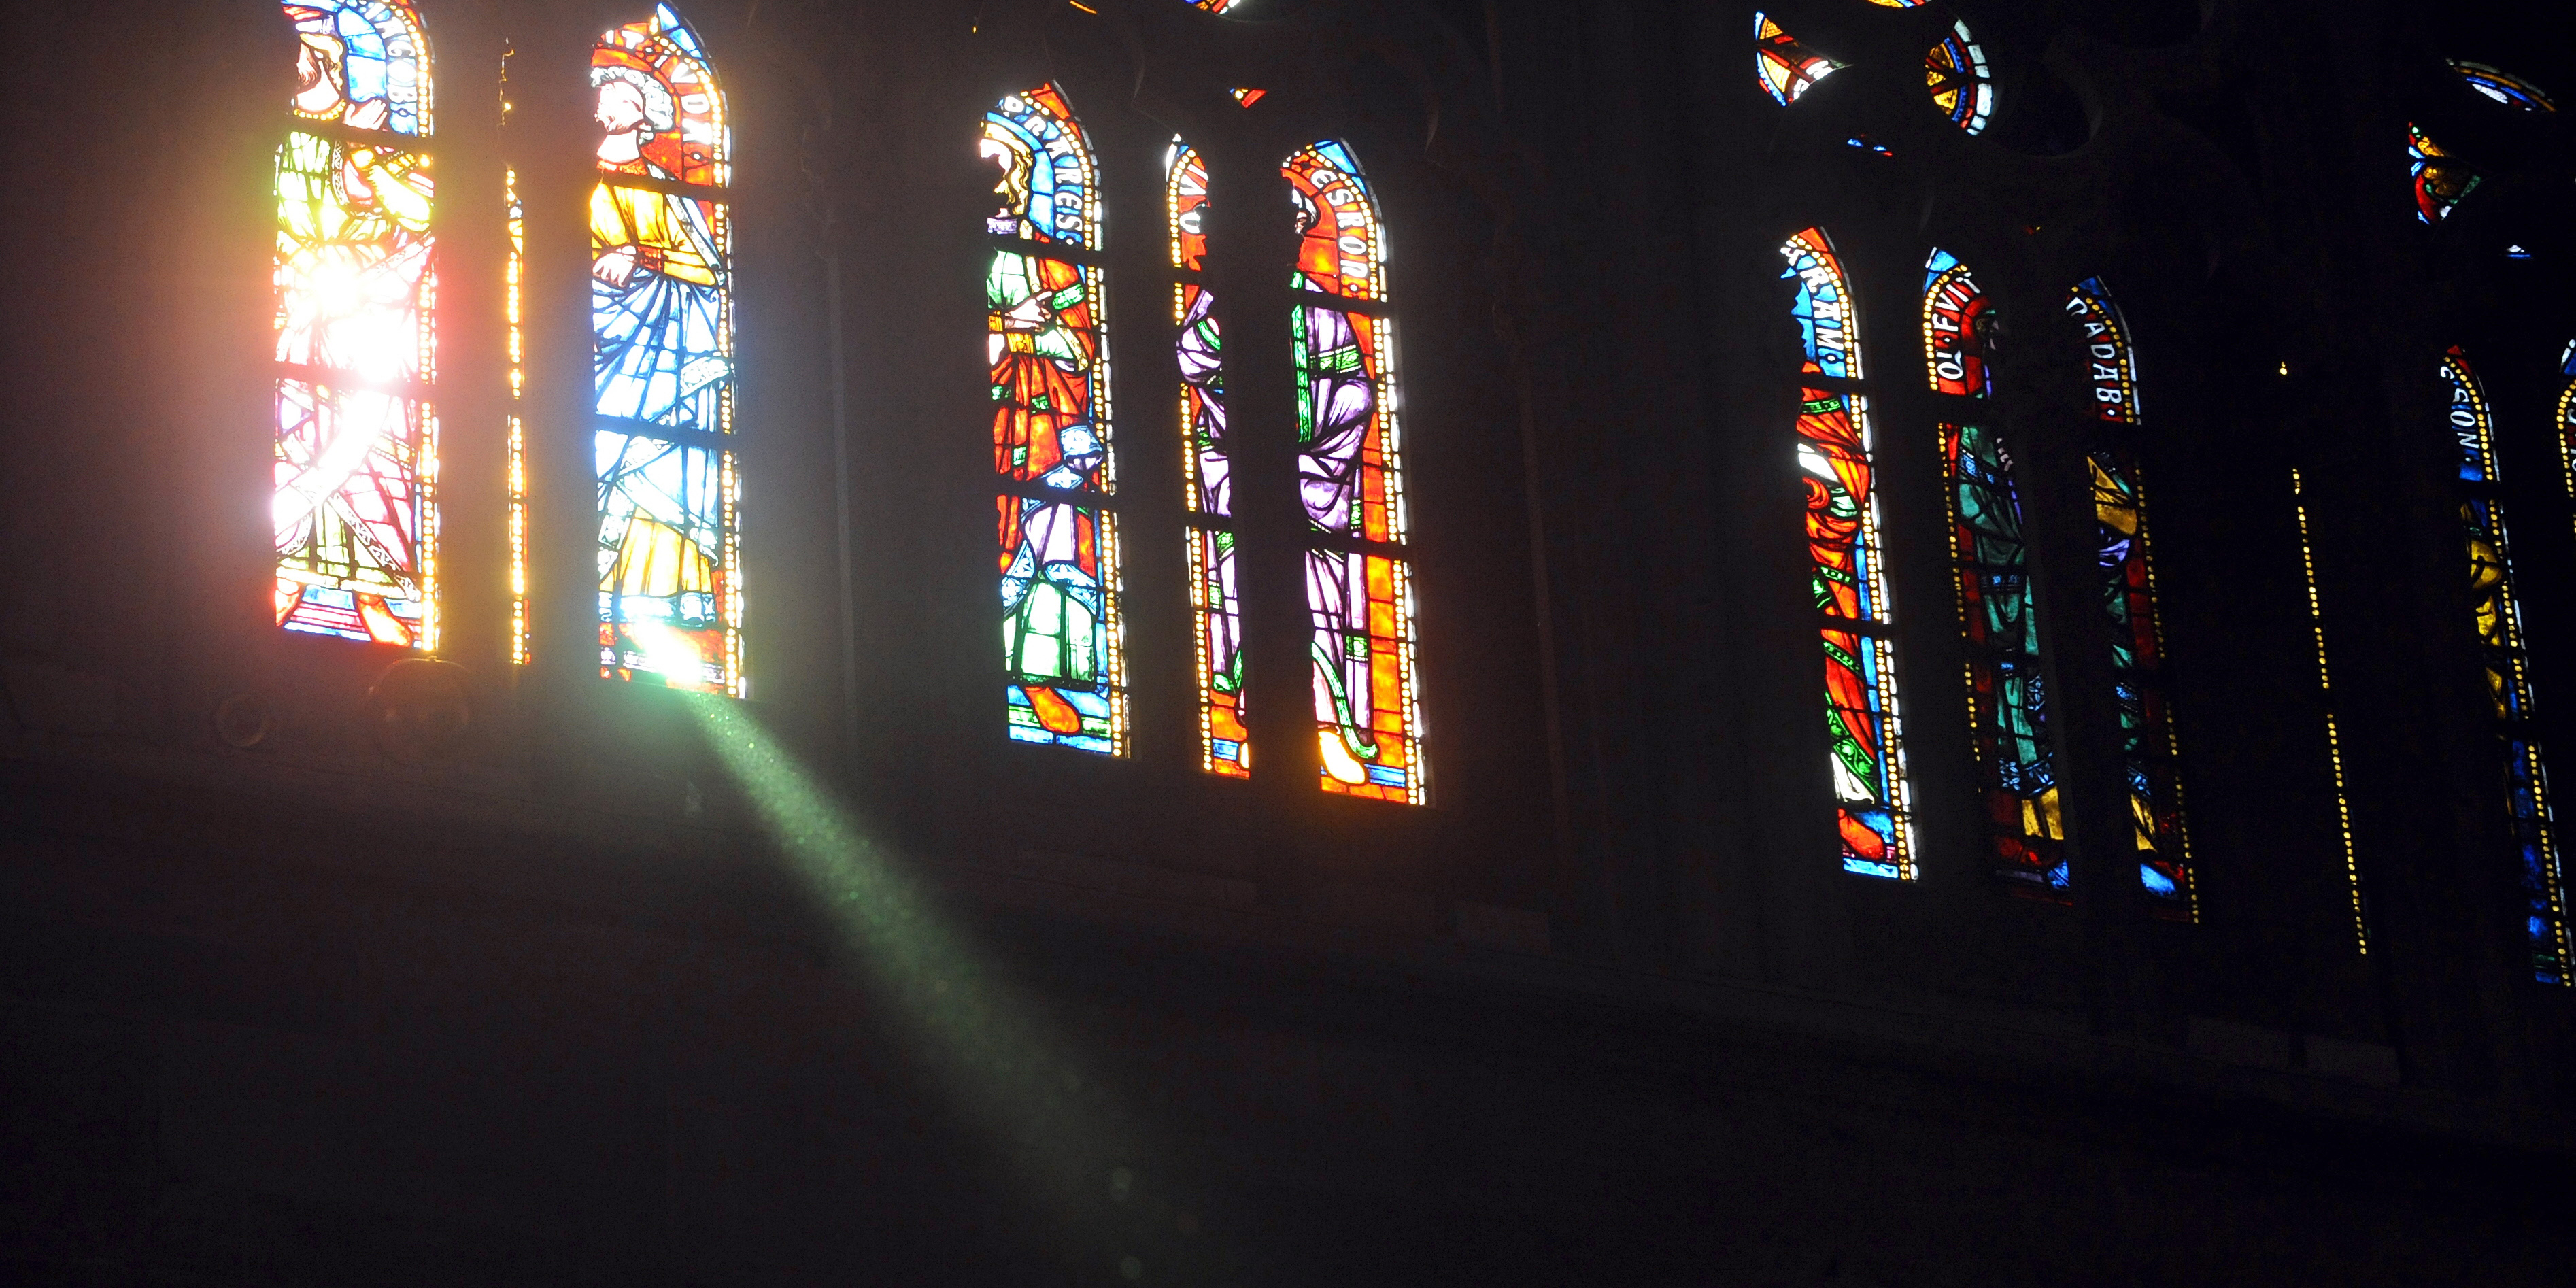 Por qué las iglesias tienen vitrales?